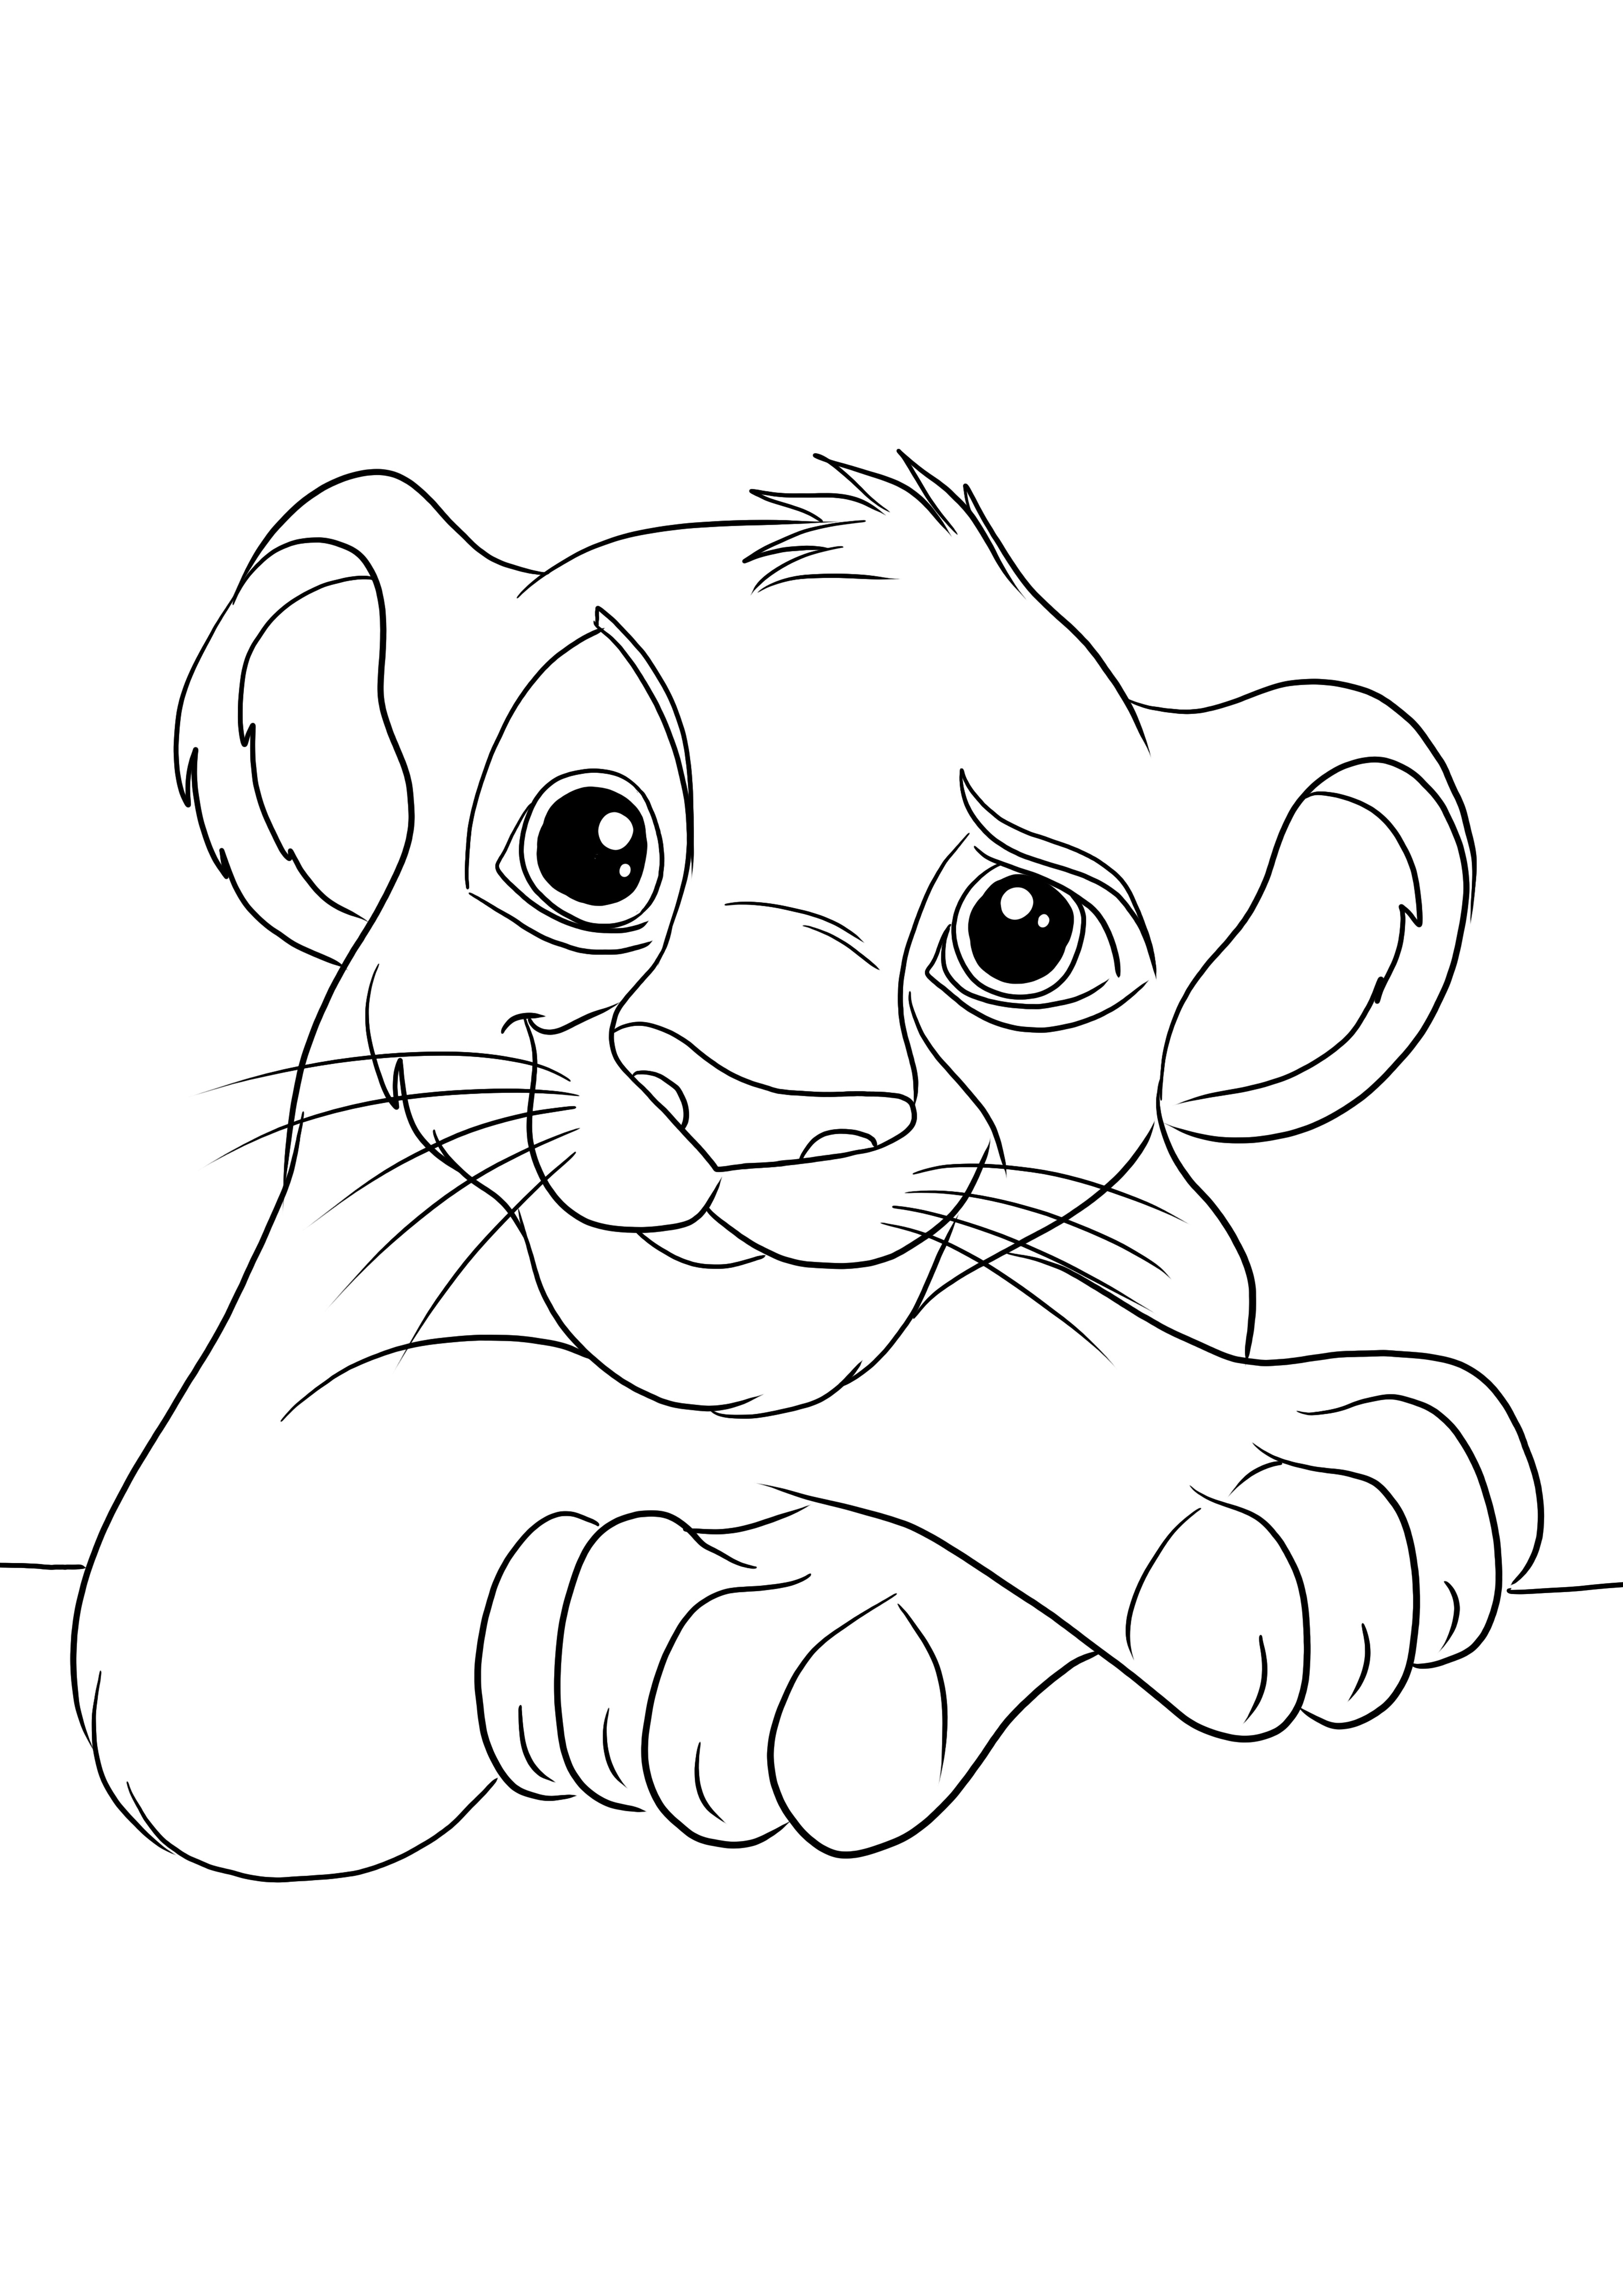 Çocuklar için yazdırmak veya indirmek ve eğlenceli bir şekilde renklendirmek için Sevimli Simba